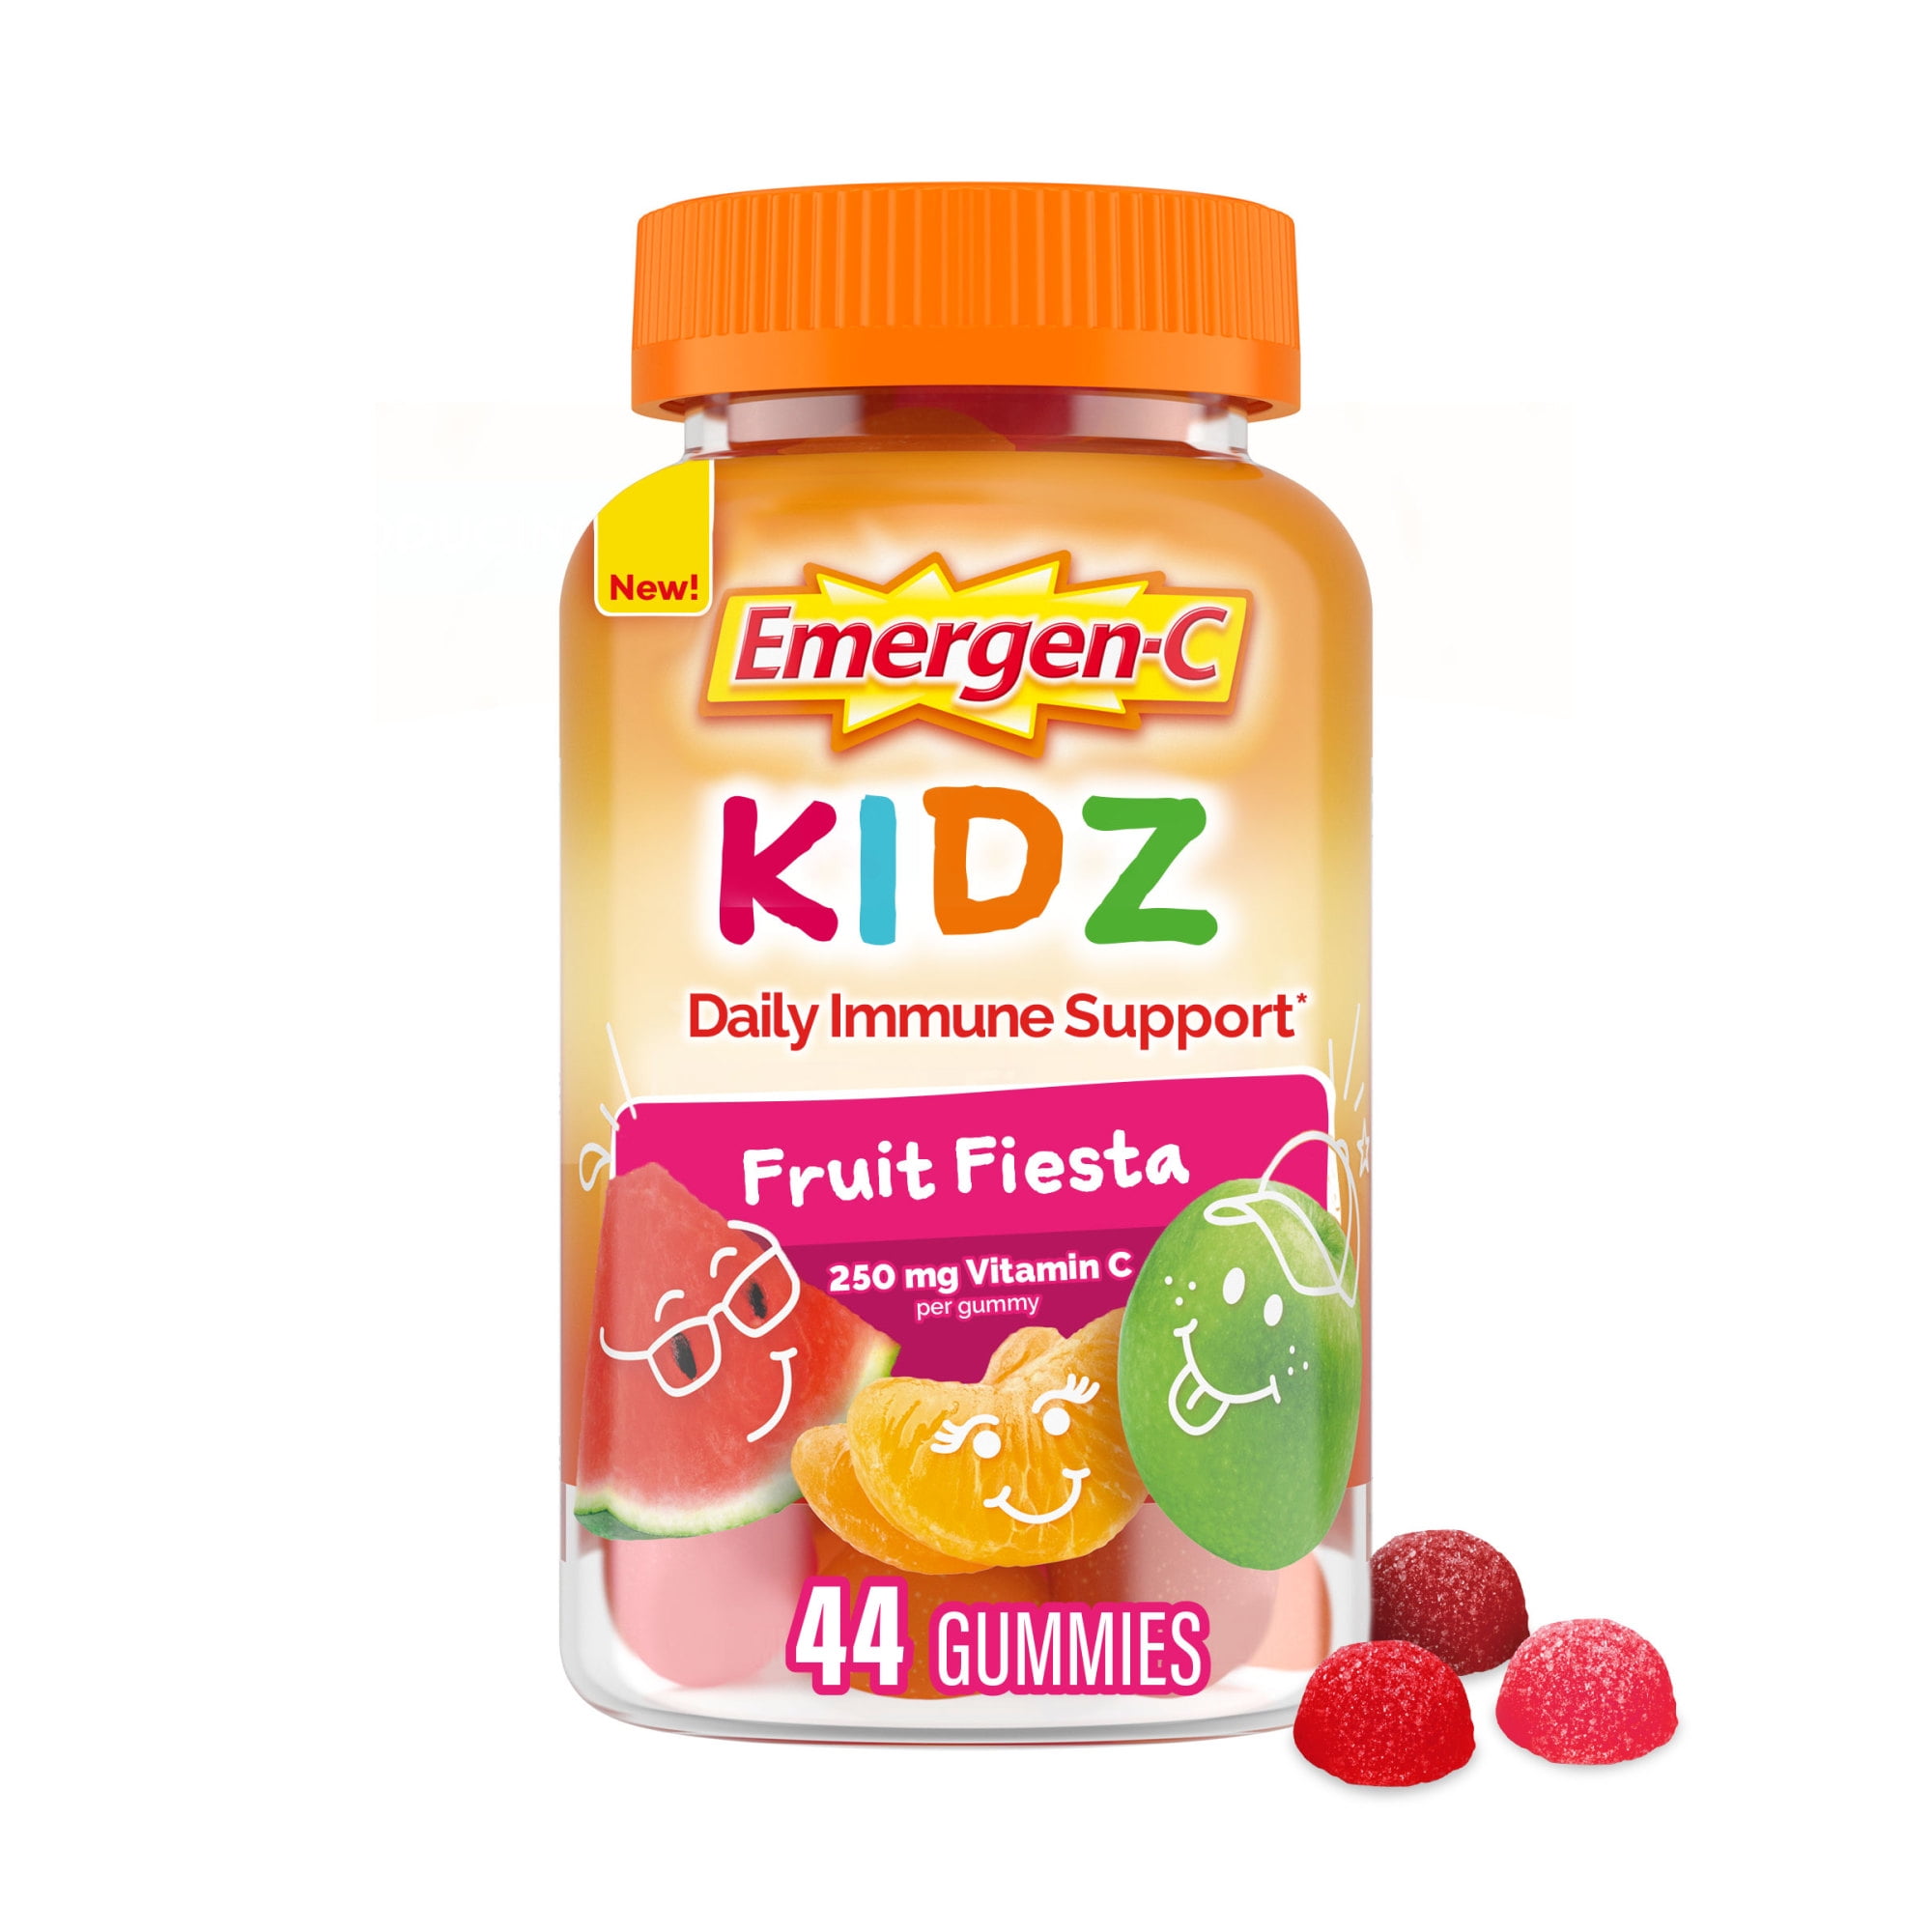 Emergen-C Kidz Daily Immune Support with Vitamin C, Fruit Fiesta - 44 ct